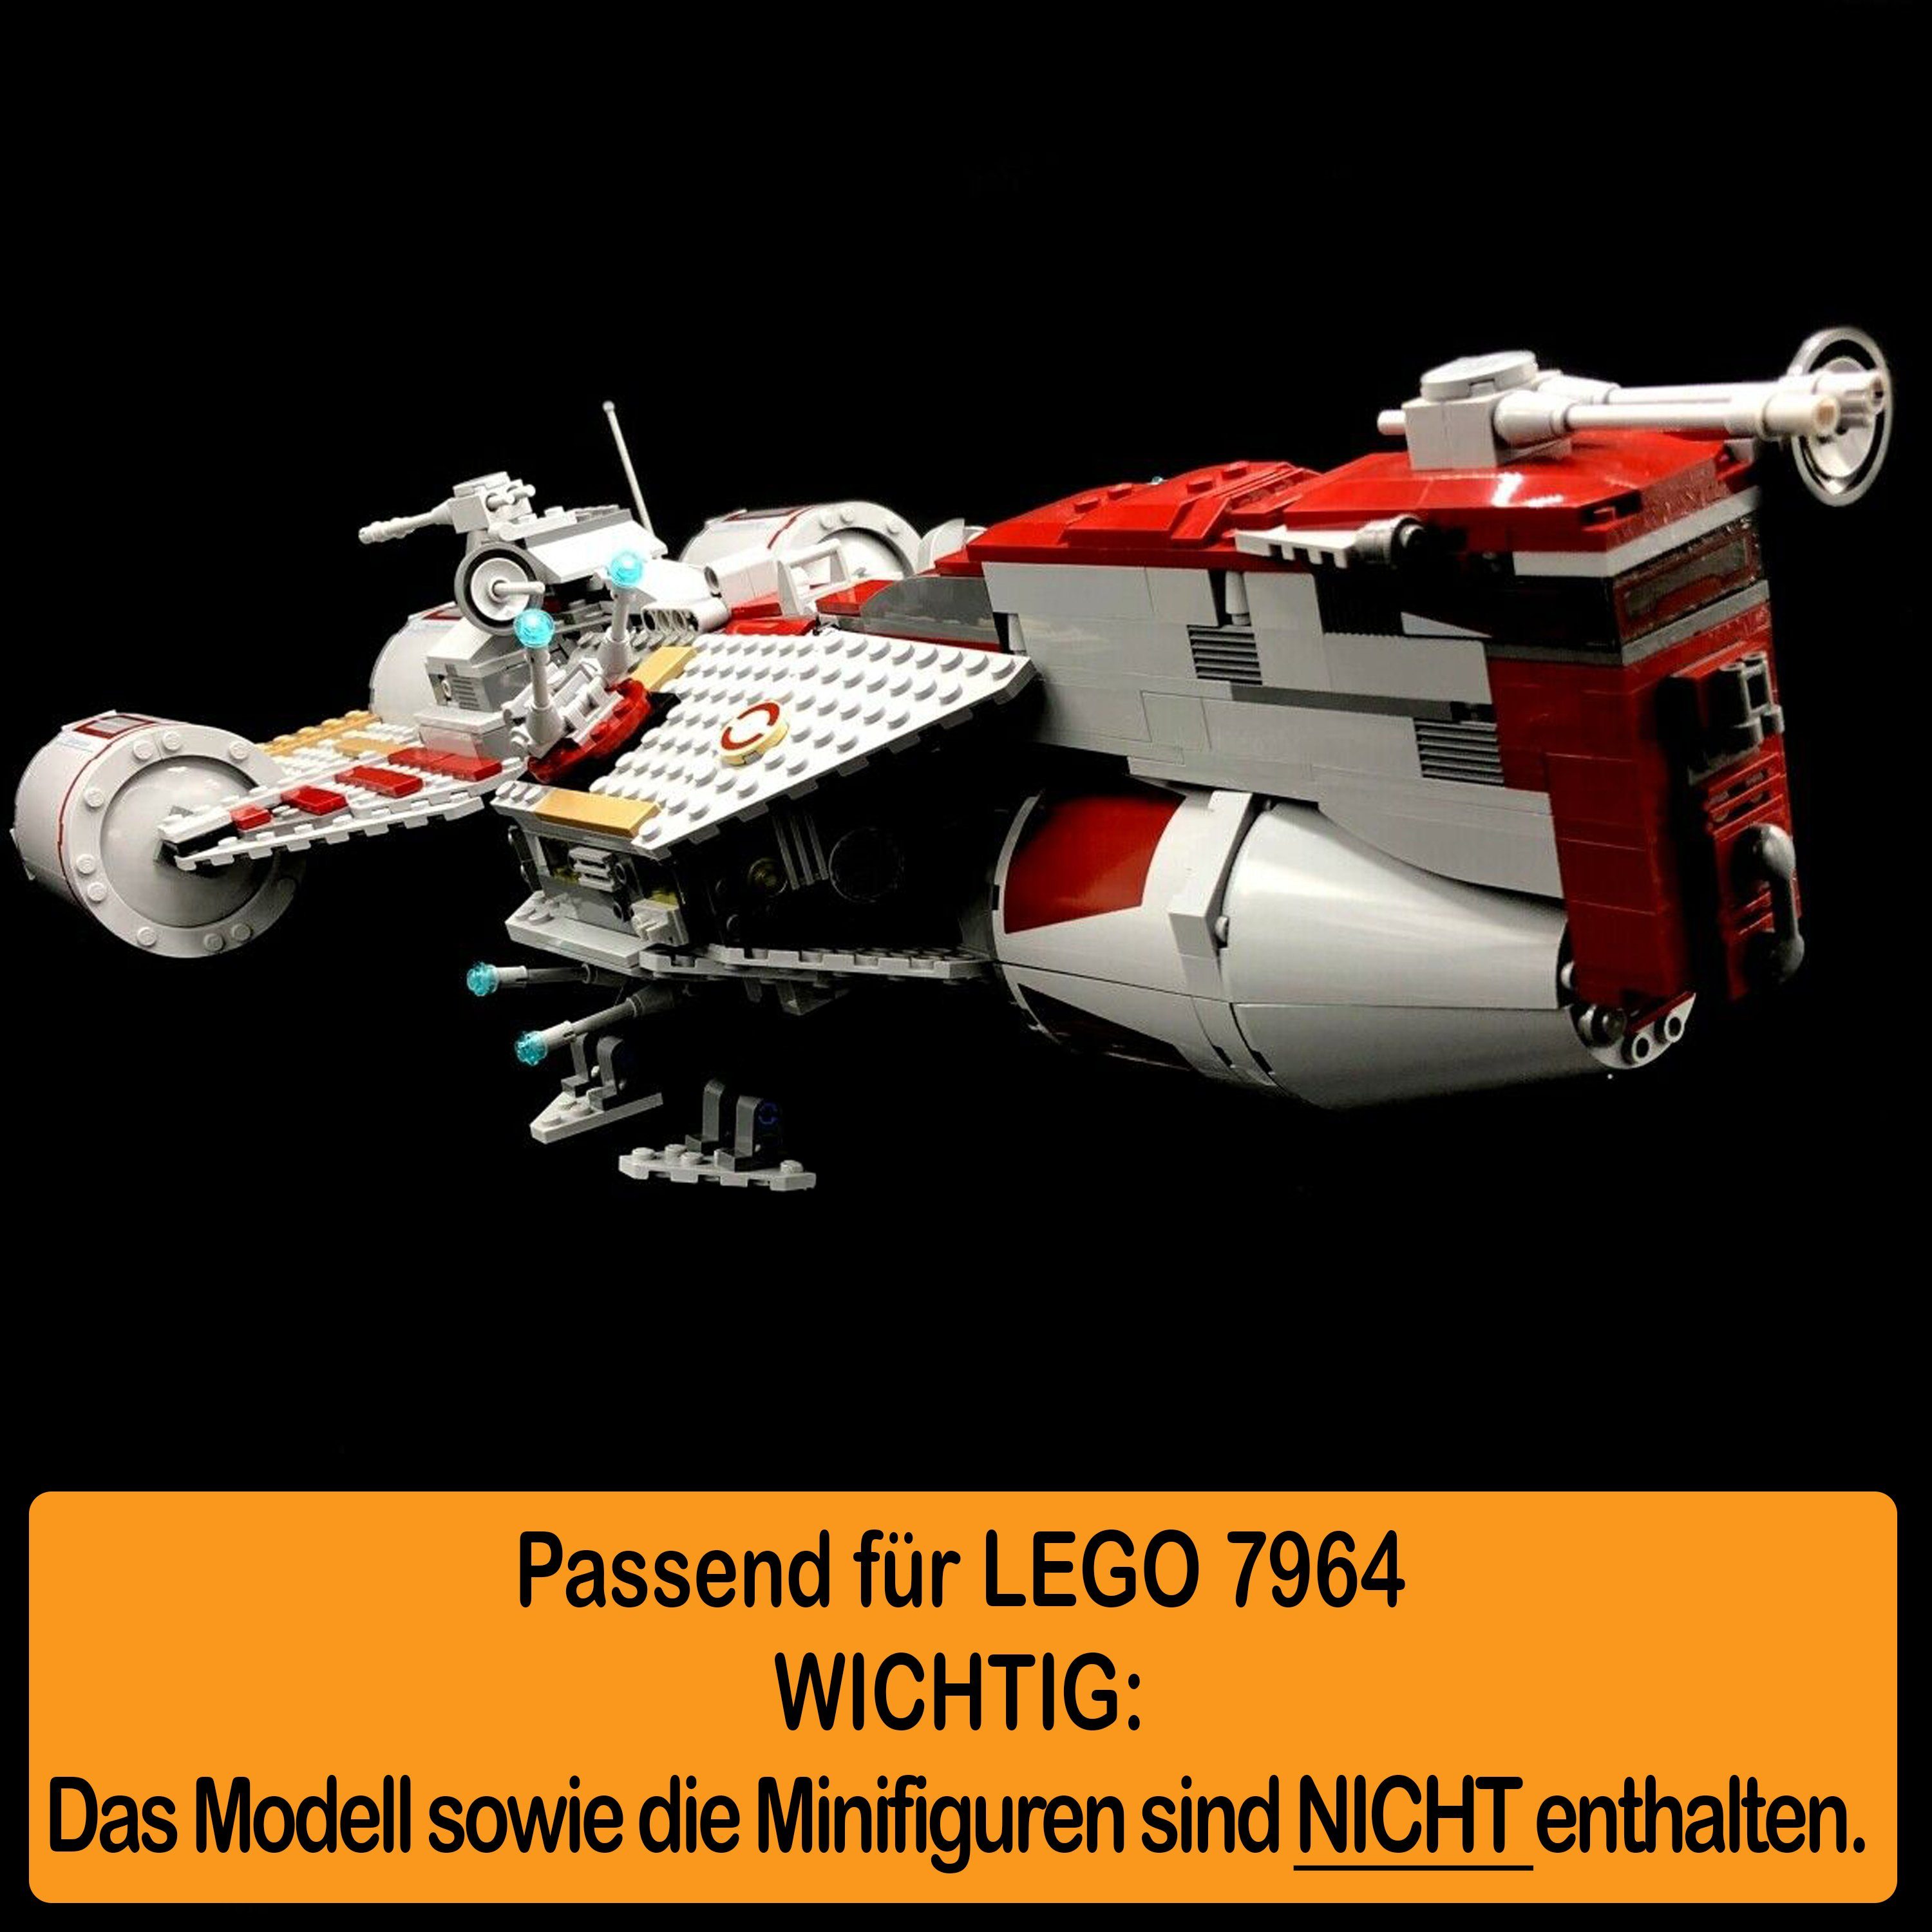 Winkel LEGO in (verschiedene Display Republic Germany AREA17 100% zusammenbauen), für Frigate einstellbar, Acryl selbst 7964 Stand Made zum Positionen Standfuß und